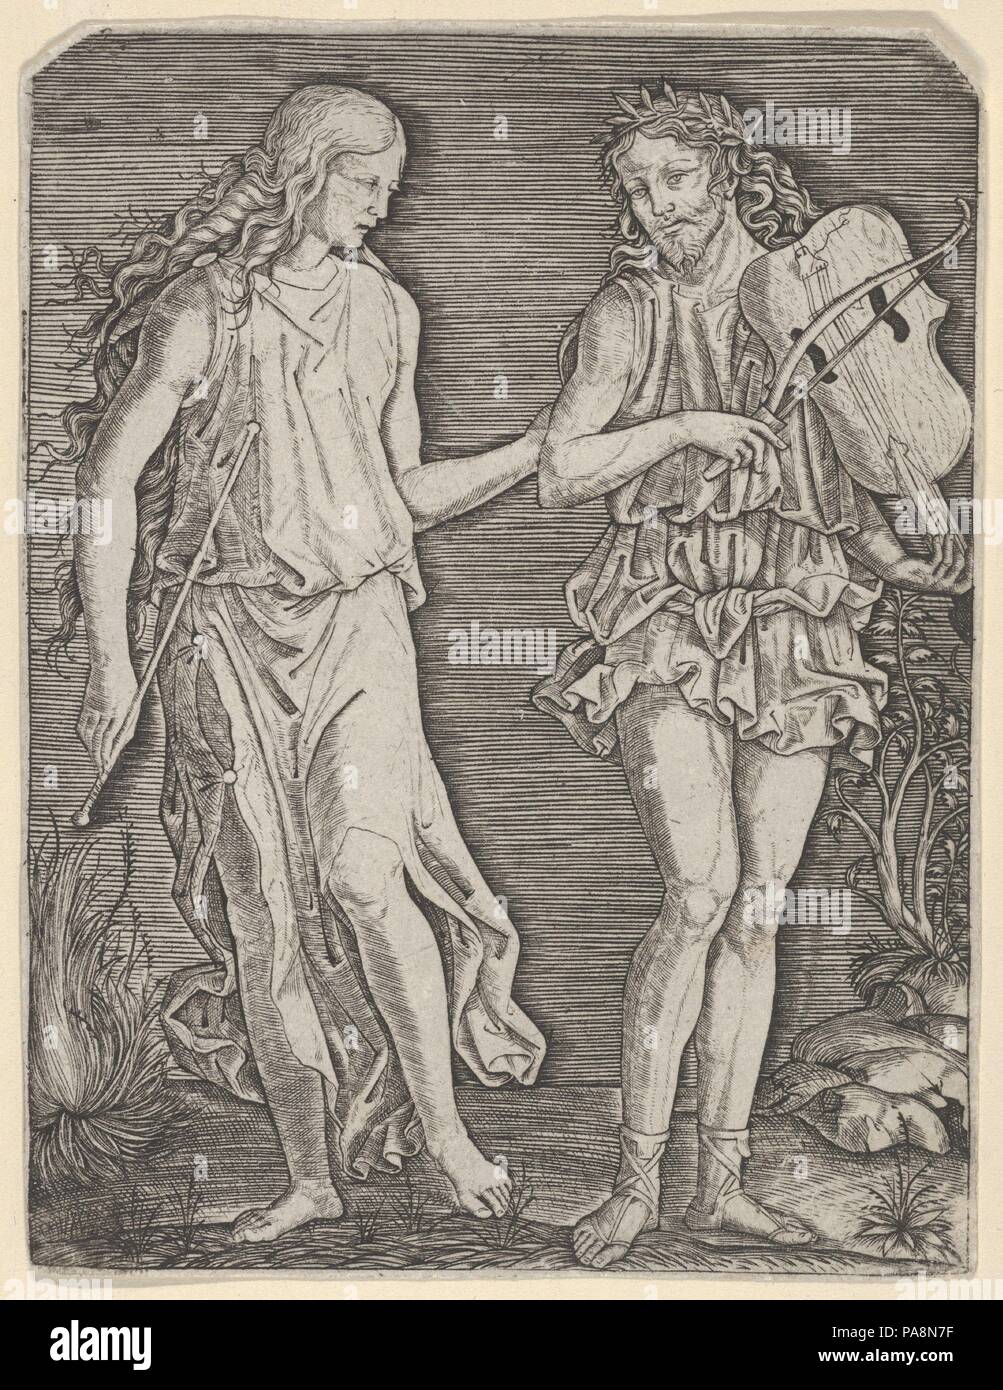 Orfeo y Eurídice. Artista: Marcantonio Raimondi (Italiano, Argini (?) ca. 1480-antes de 1534 Bolonia (?); después? Francesco Francia (Italiano, Bolonia ca. Bolonia, 1447-1517). Dimensiones: 5 1/16 x 3 7/8 pulg. (12,9 x 9.8cm). Fecha: ca. 1500-1506. Marcantonio representa el afamado músico Orfeo (hijo de Apolo y la Musa Calliope) y su amada Eurídice, quien en el día de su boda había sido fatalmente mordido por una serpiente. El inconsolable novio descendió al Hades, la tierra de los muertos, donde su canto y lira tan encantado de Plutón y Proserpina que estaba autorizado a llevar Eurydice fuera del inframundo. La mo Foto de stock